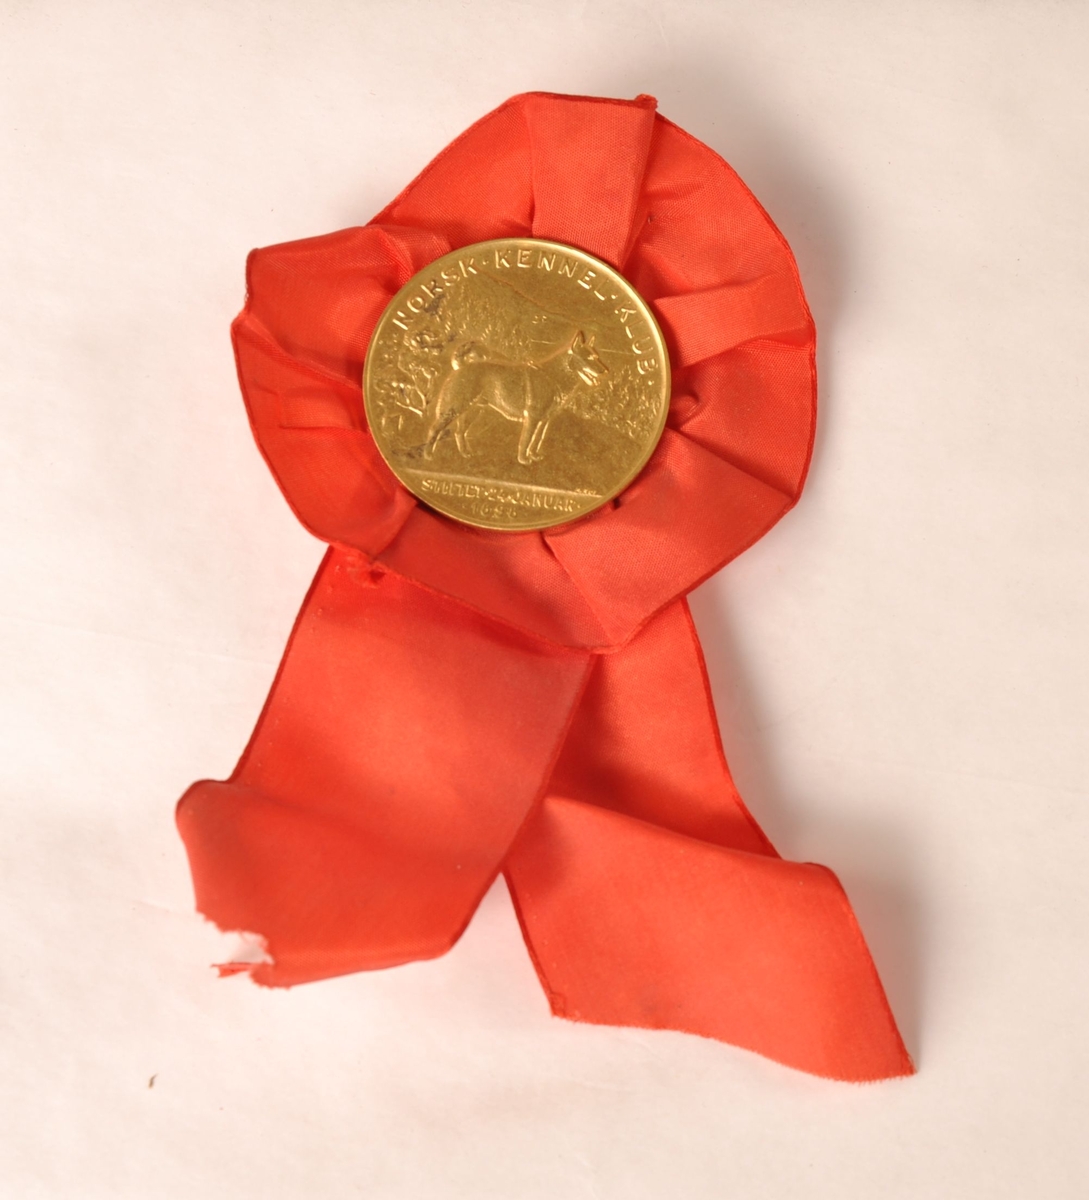 Rosett av rødt tekstil med medalje av gullfarget metall i midten